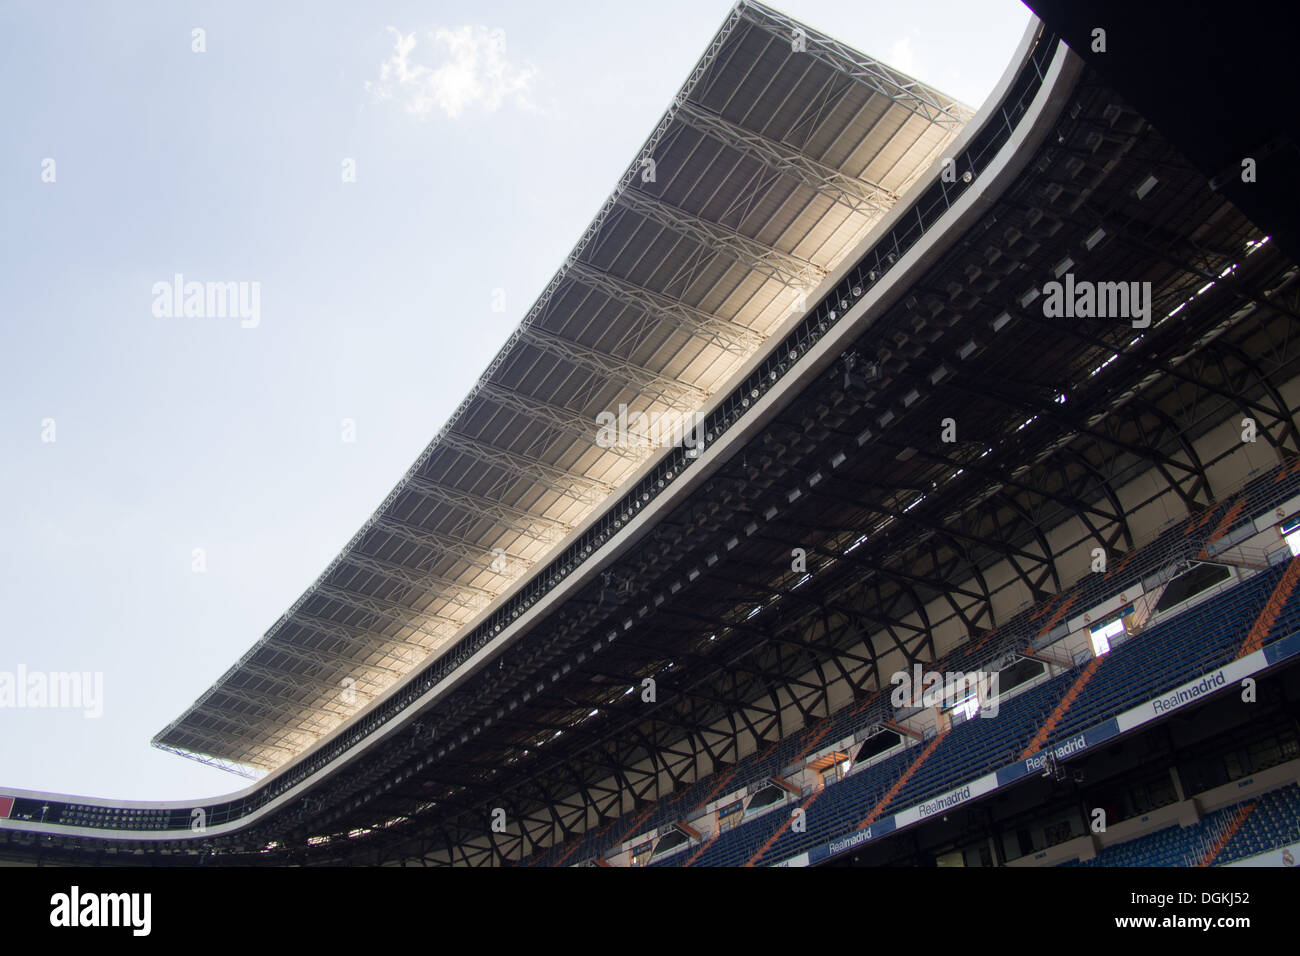 Real Madrid football stadium, Madrid, Capital City of Spain Stock Photo